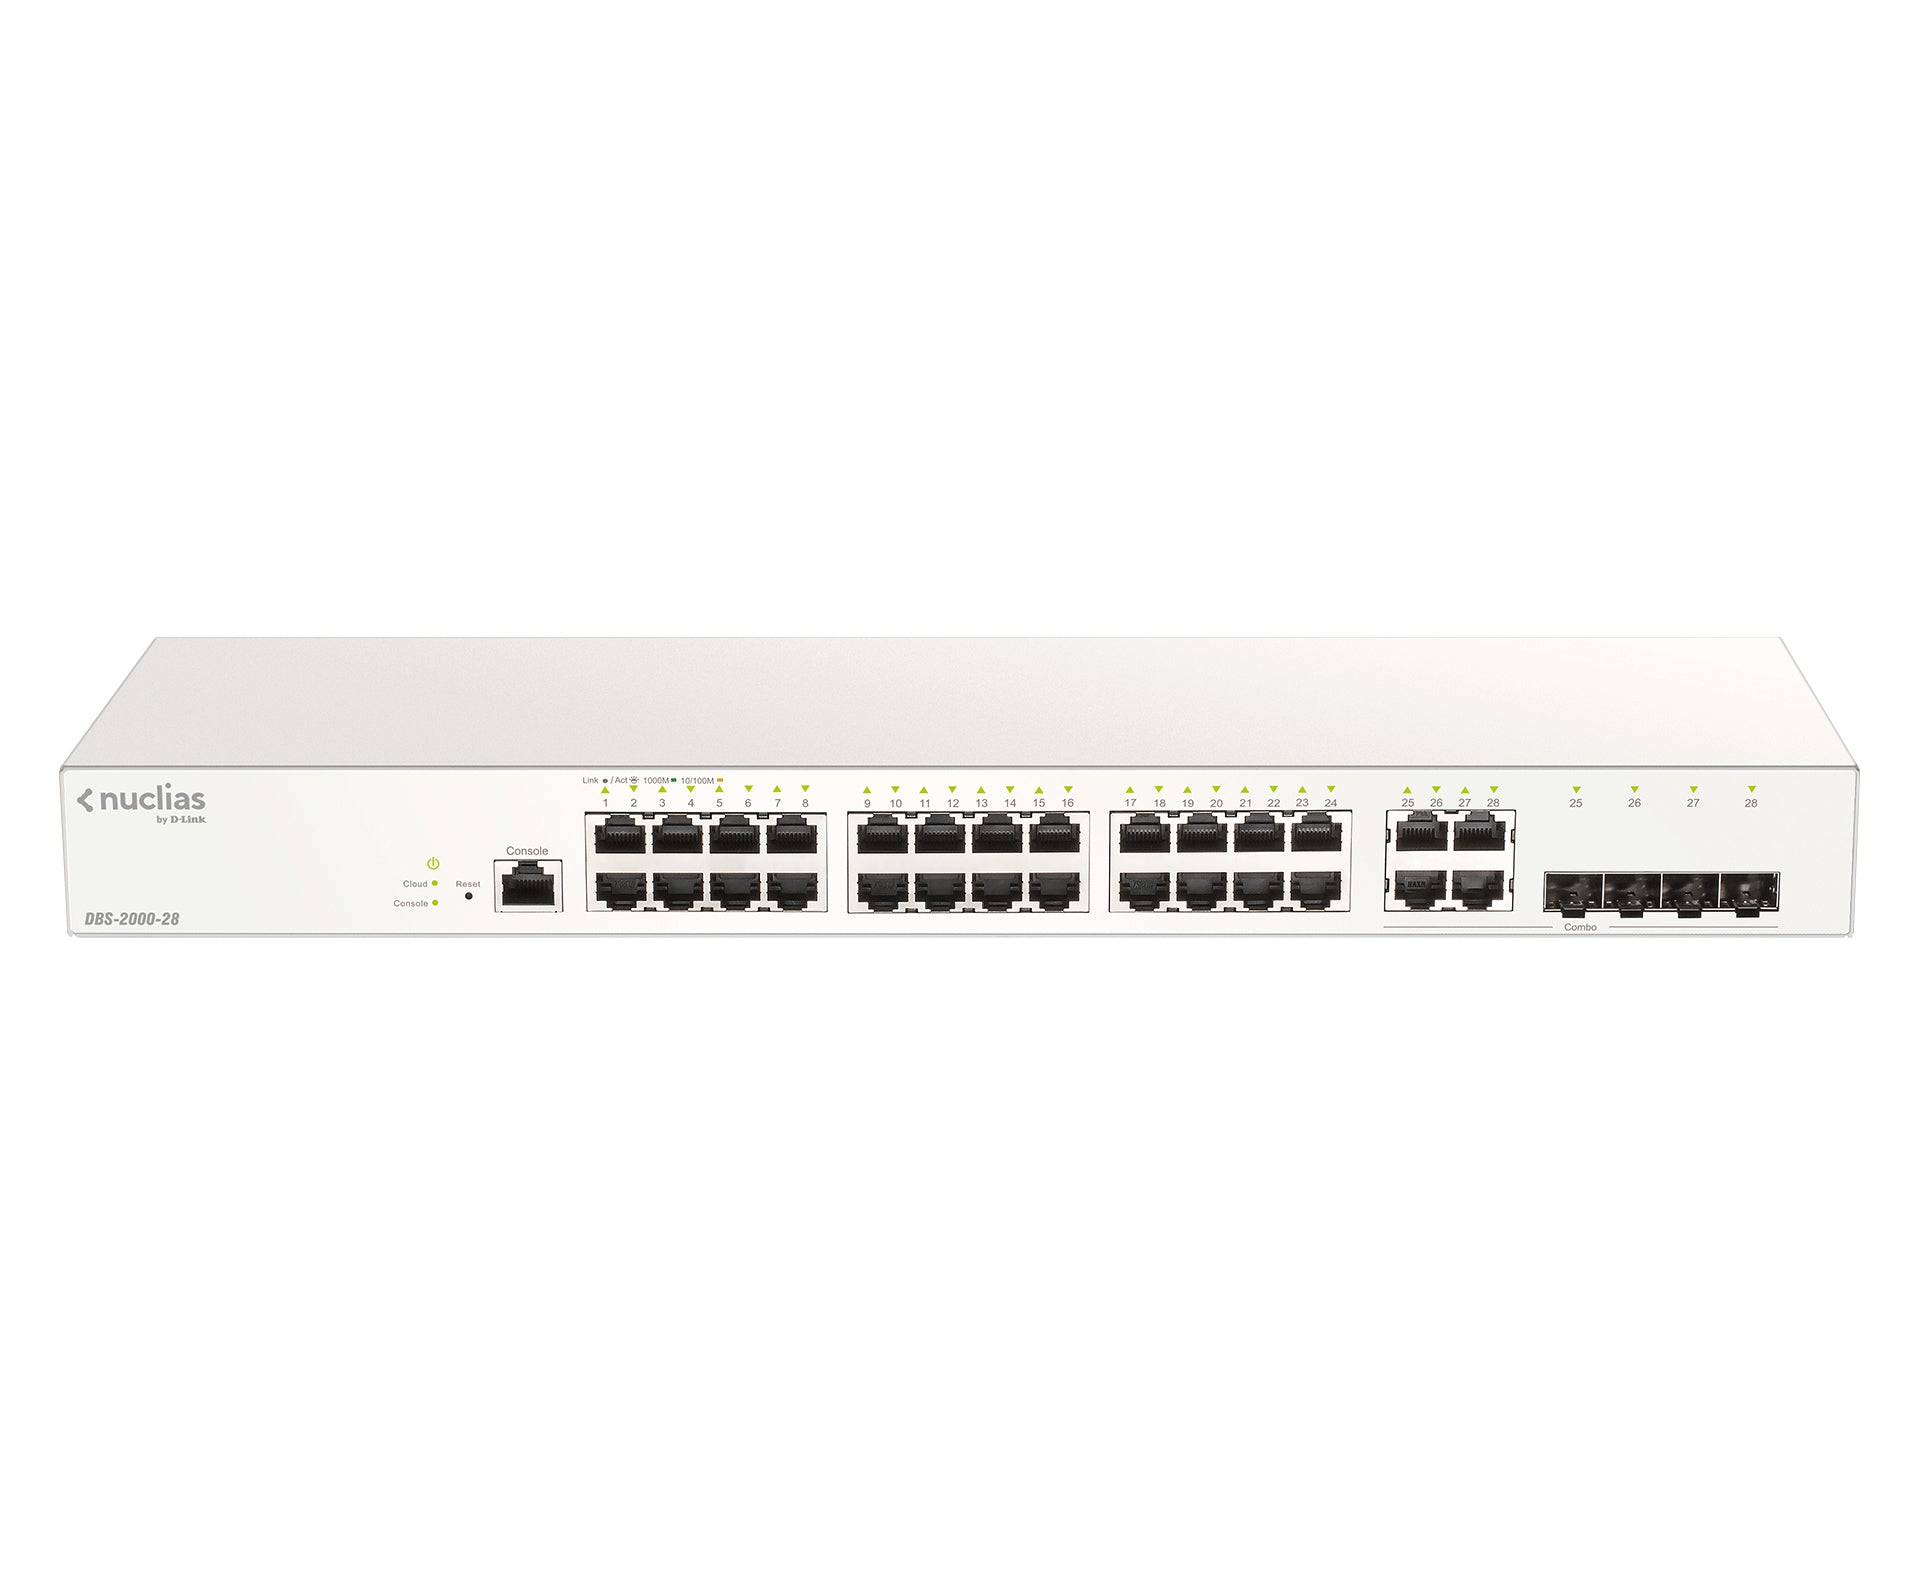 D-Link DBS-2000-28 network switch Managed L2 Gigabit Ethernet (10/100/1000) Grey